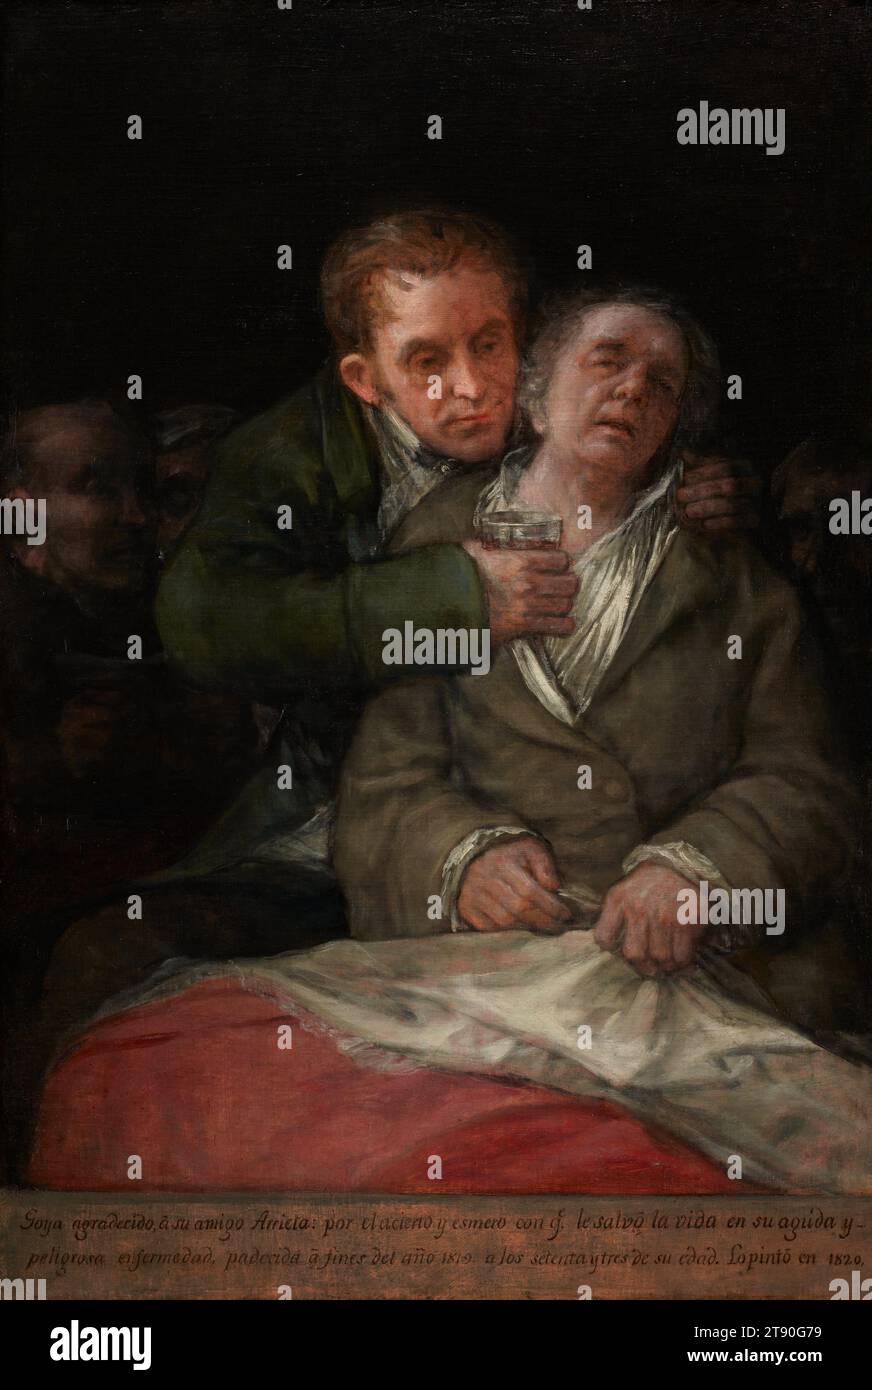 Autoportrait avec Dr. Arrieta, 1820, Francisco José de Goya y Lucientes, espagnol, 1746–1828, 45 1/8 x 30 1/8 po. (114,62 x 76,52 cm) (toile)54 x 39 1/8 x 3 3/4 po (137,16 x 99,38 x 9,53 cm) (cadre extérieur), huile sur toile, Espagne, 19e siècle, en tant que peintre de cour de Charles III et Charles IV d'Espagne, Goya a acquis une renommée considérable en tant que portraitiste. Autoportrait avec le Dr Arrieta, le dernier de ses nombreux autoportraits, a été exécuté tard dans sa vie. En 1819, Goya était tombé gravement malade et son médecin, Eugenio Garc’a Arrieta, l’a soigné à nouveau. Banque D'Images